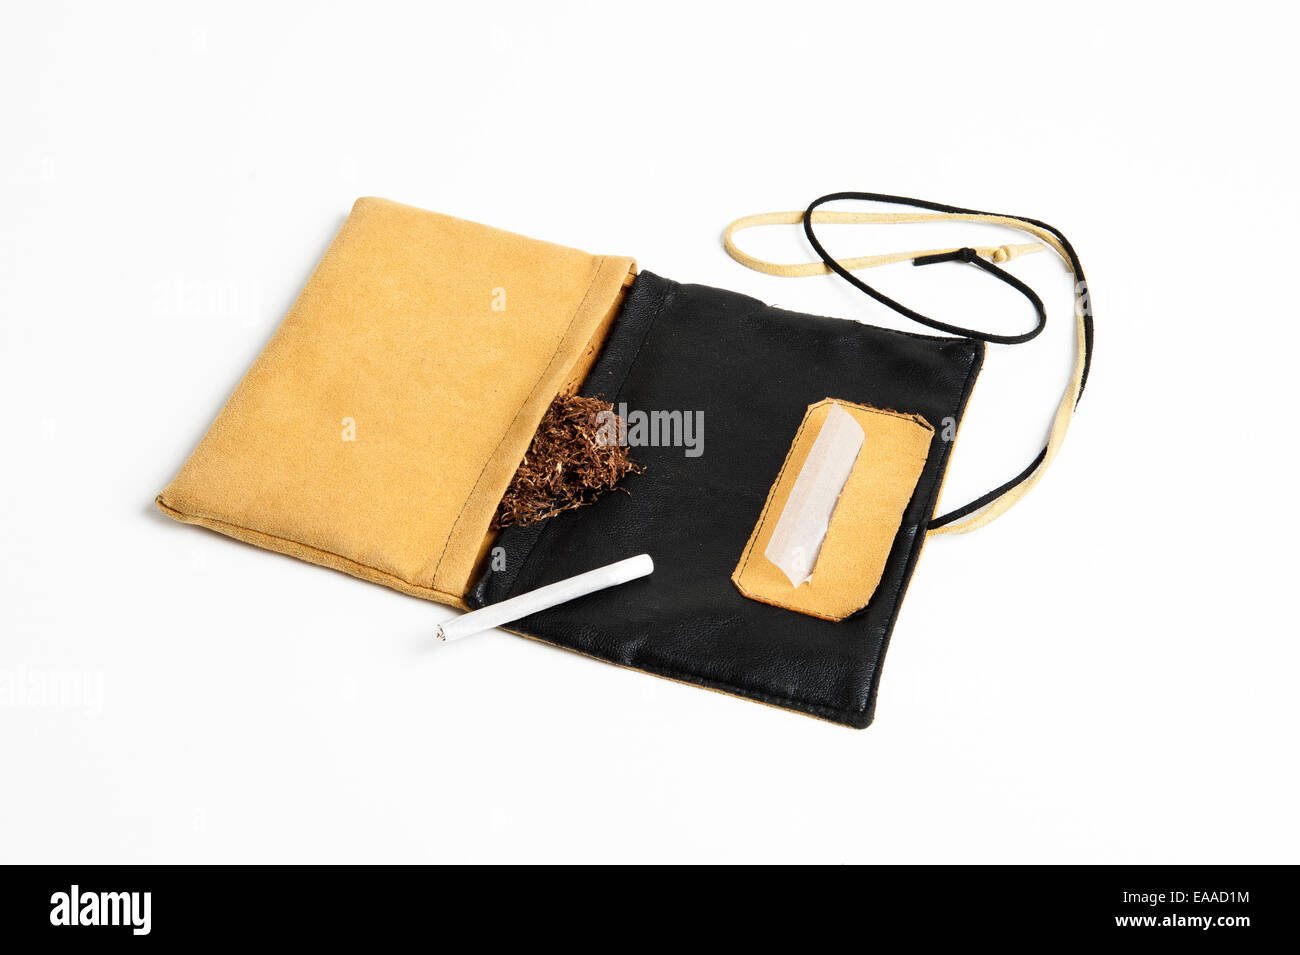 Il tabacco, filtro carta di sigaretta e di un termine di sigarette fatte a mano, con un giallo portamonete di tabacco isolato su sfondo bianco Foto Stock